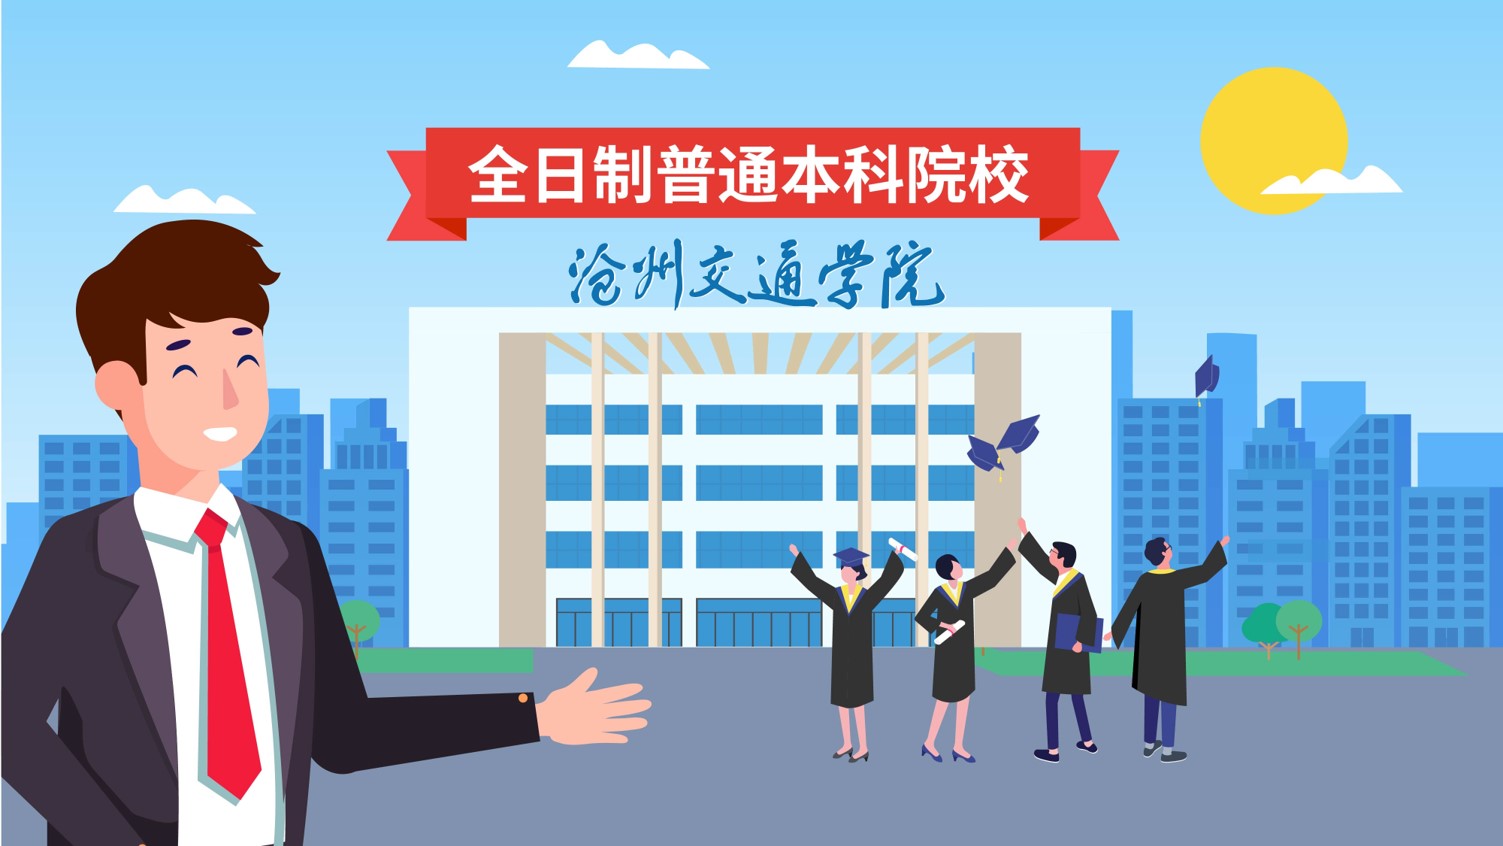 沧州交通学院招生宣传动画